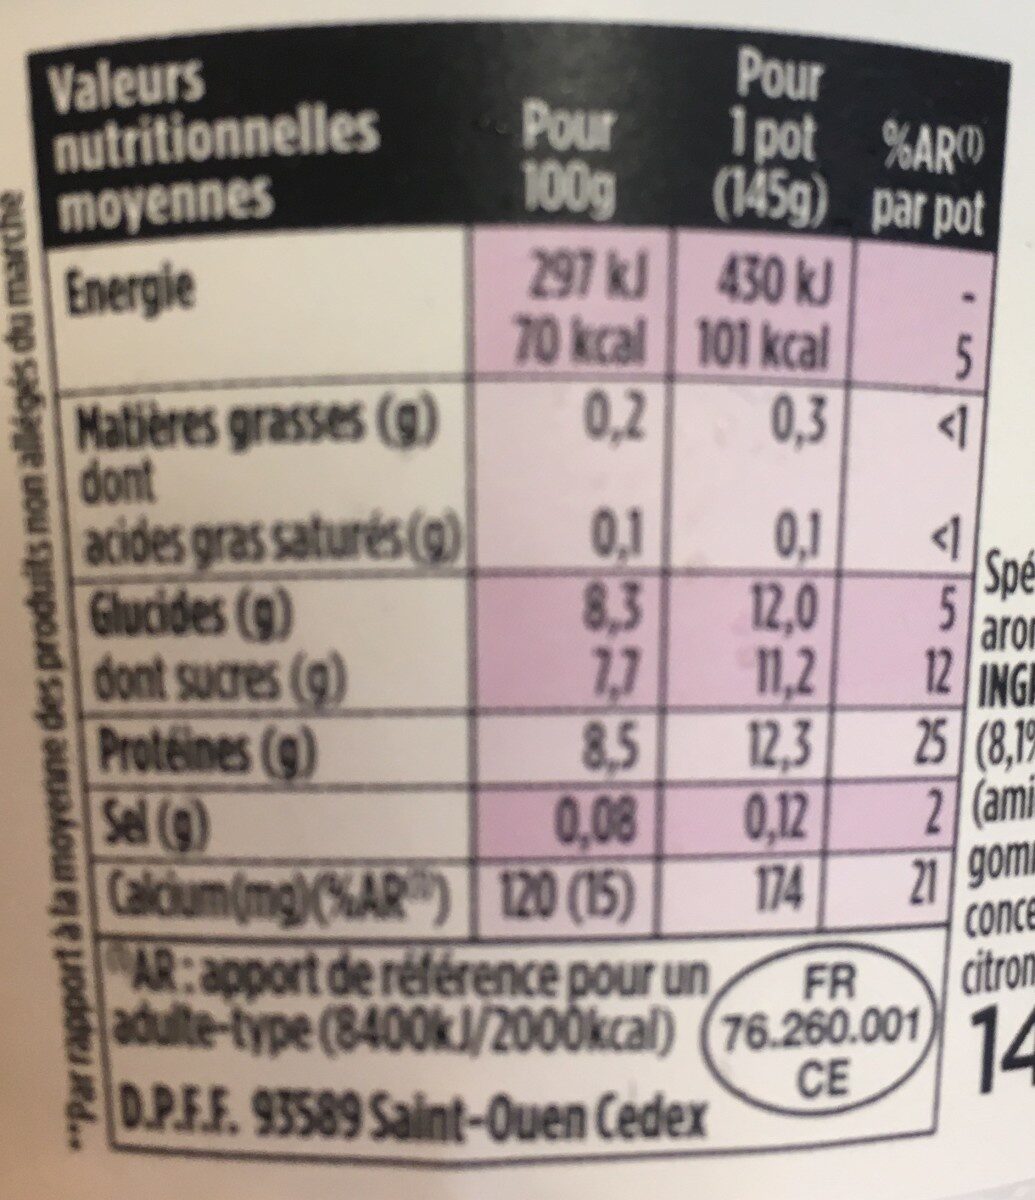 Light & free skyr sur lit myrtille cranberry 145 g x 1 - Tableau nutritionnel